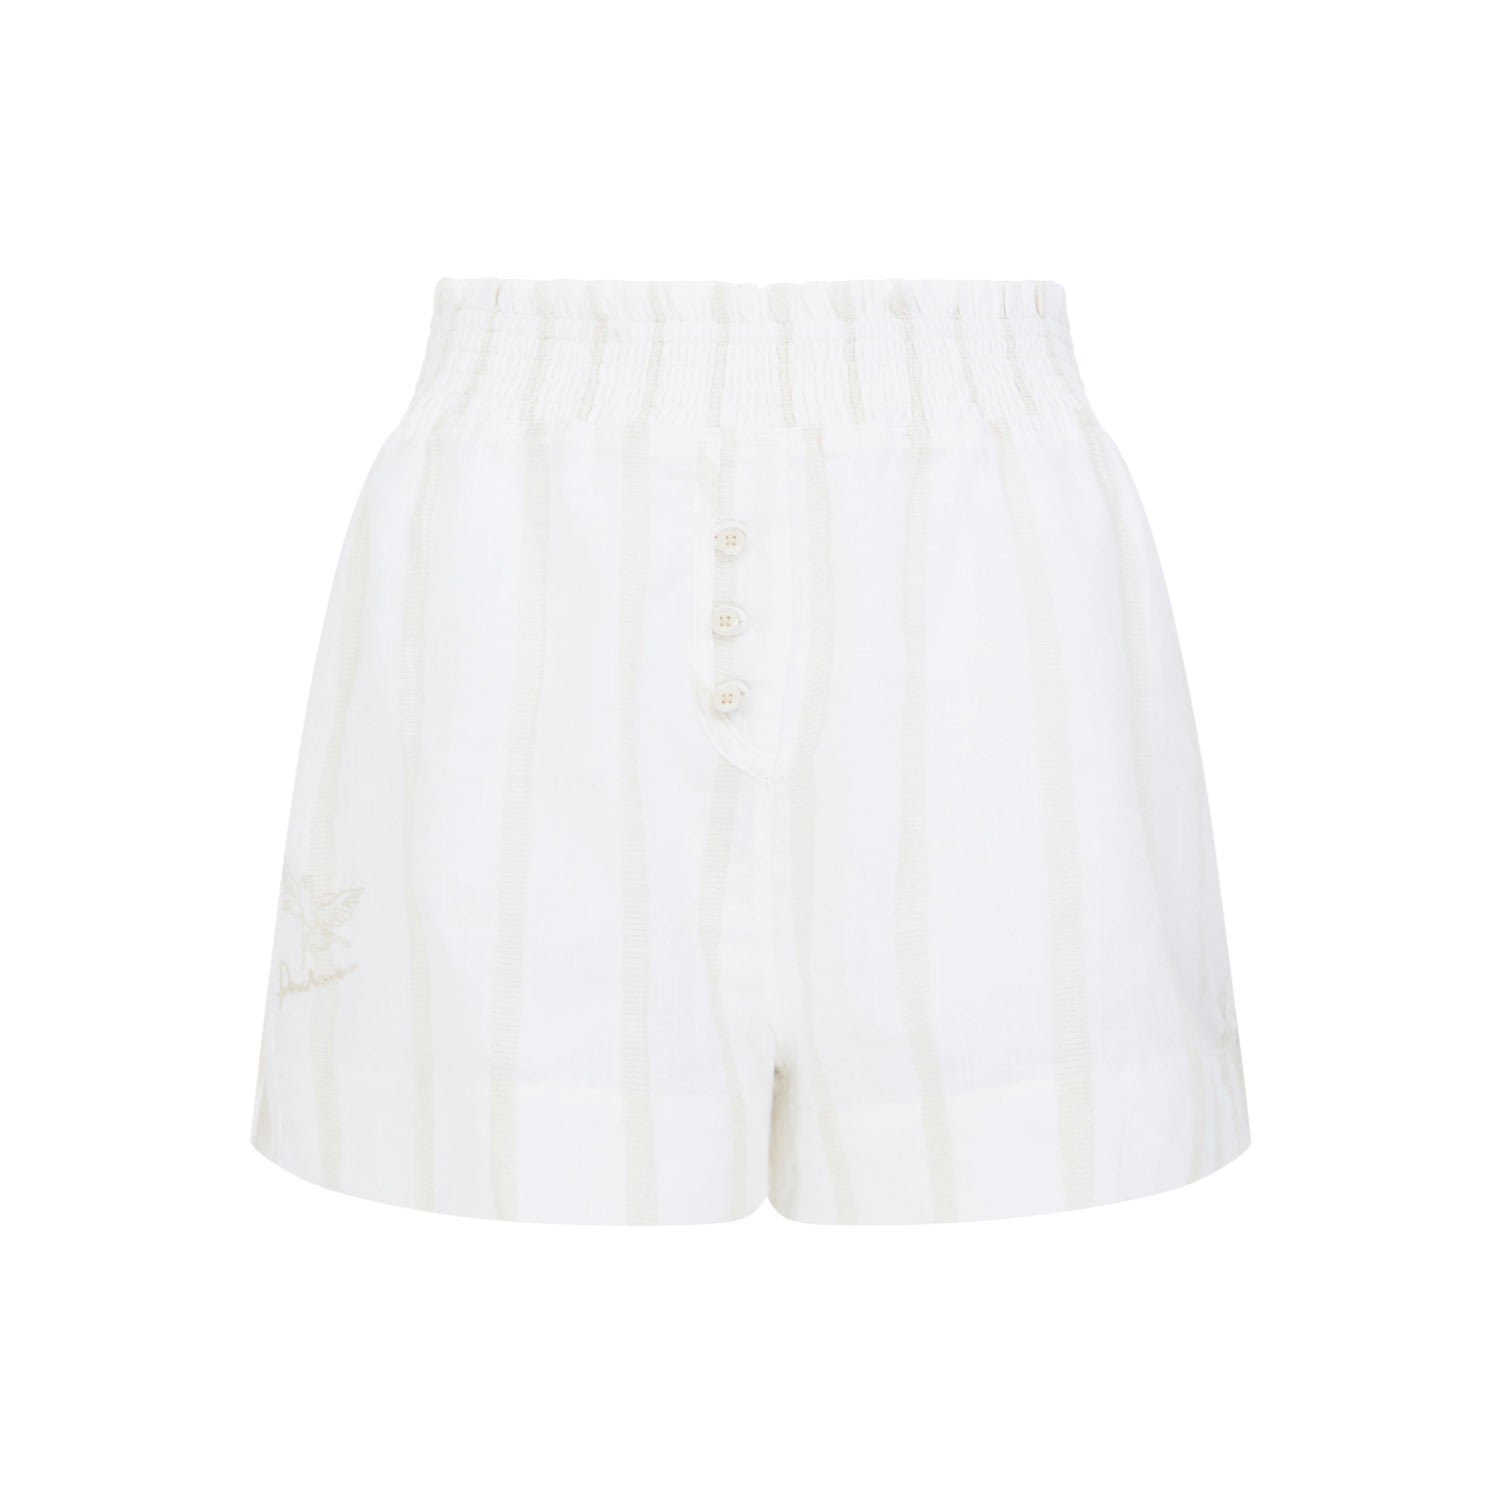 Peachaus Women's Neutrals Lomandra Cotton Pyjama Shorts - Summer Sand Beige In White